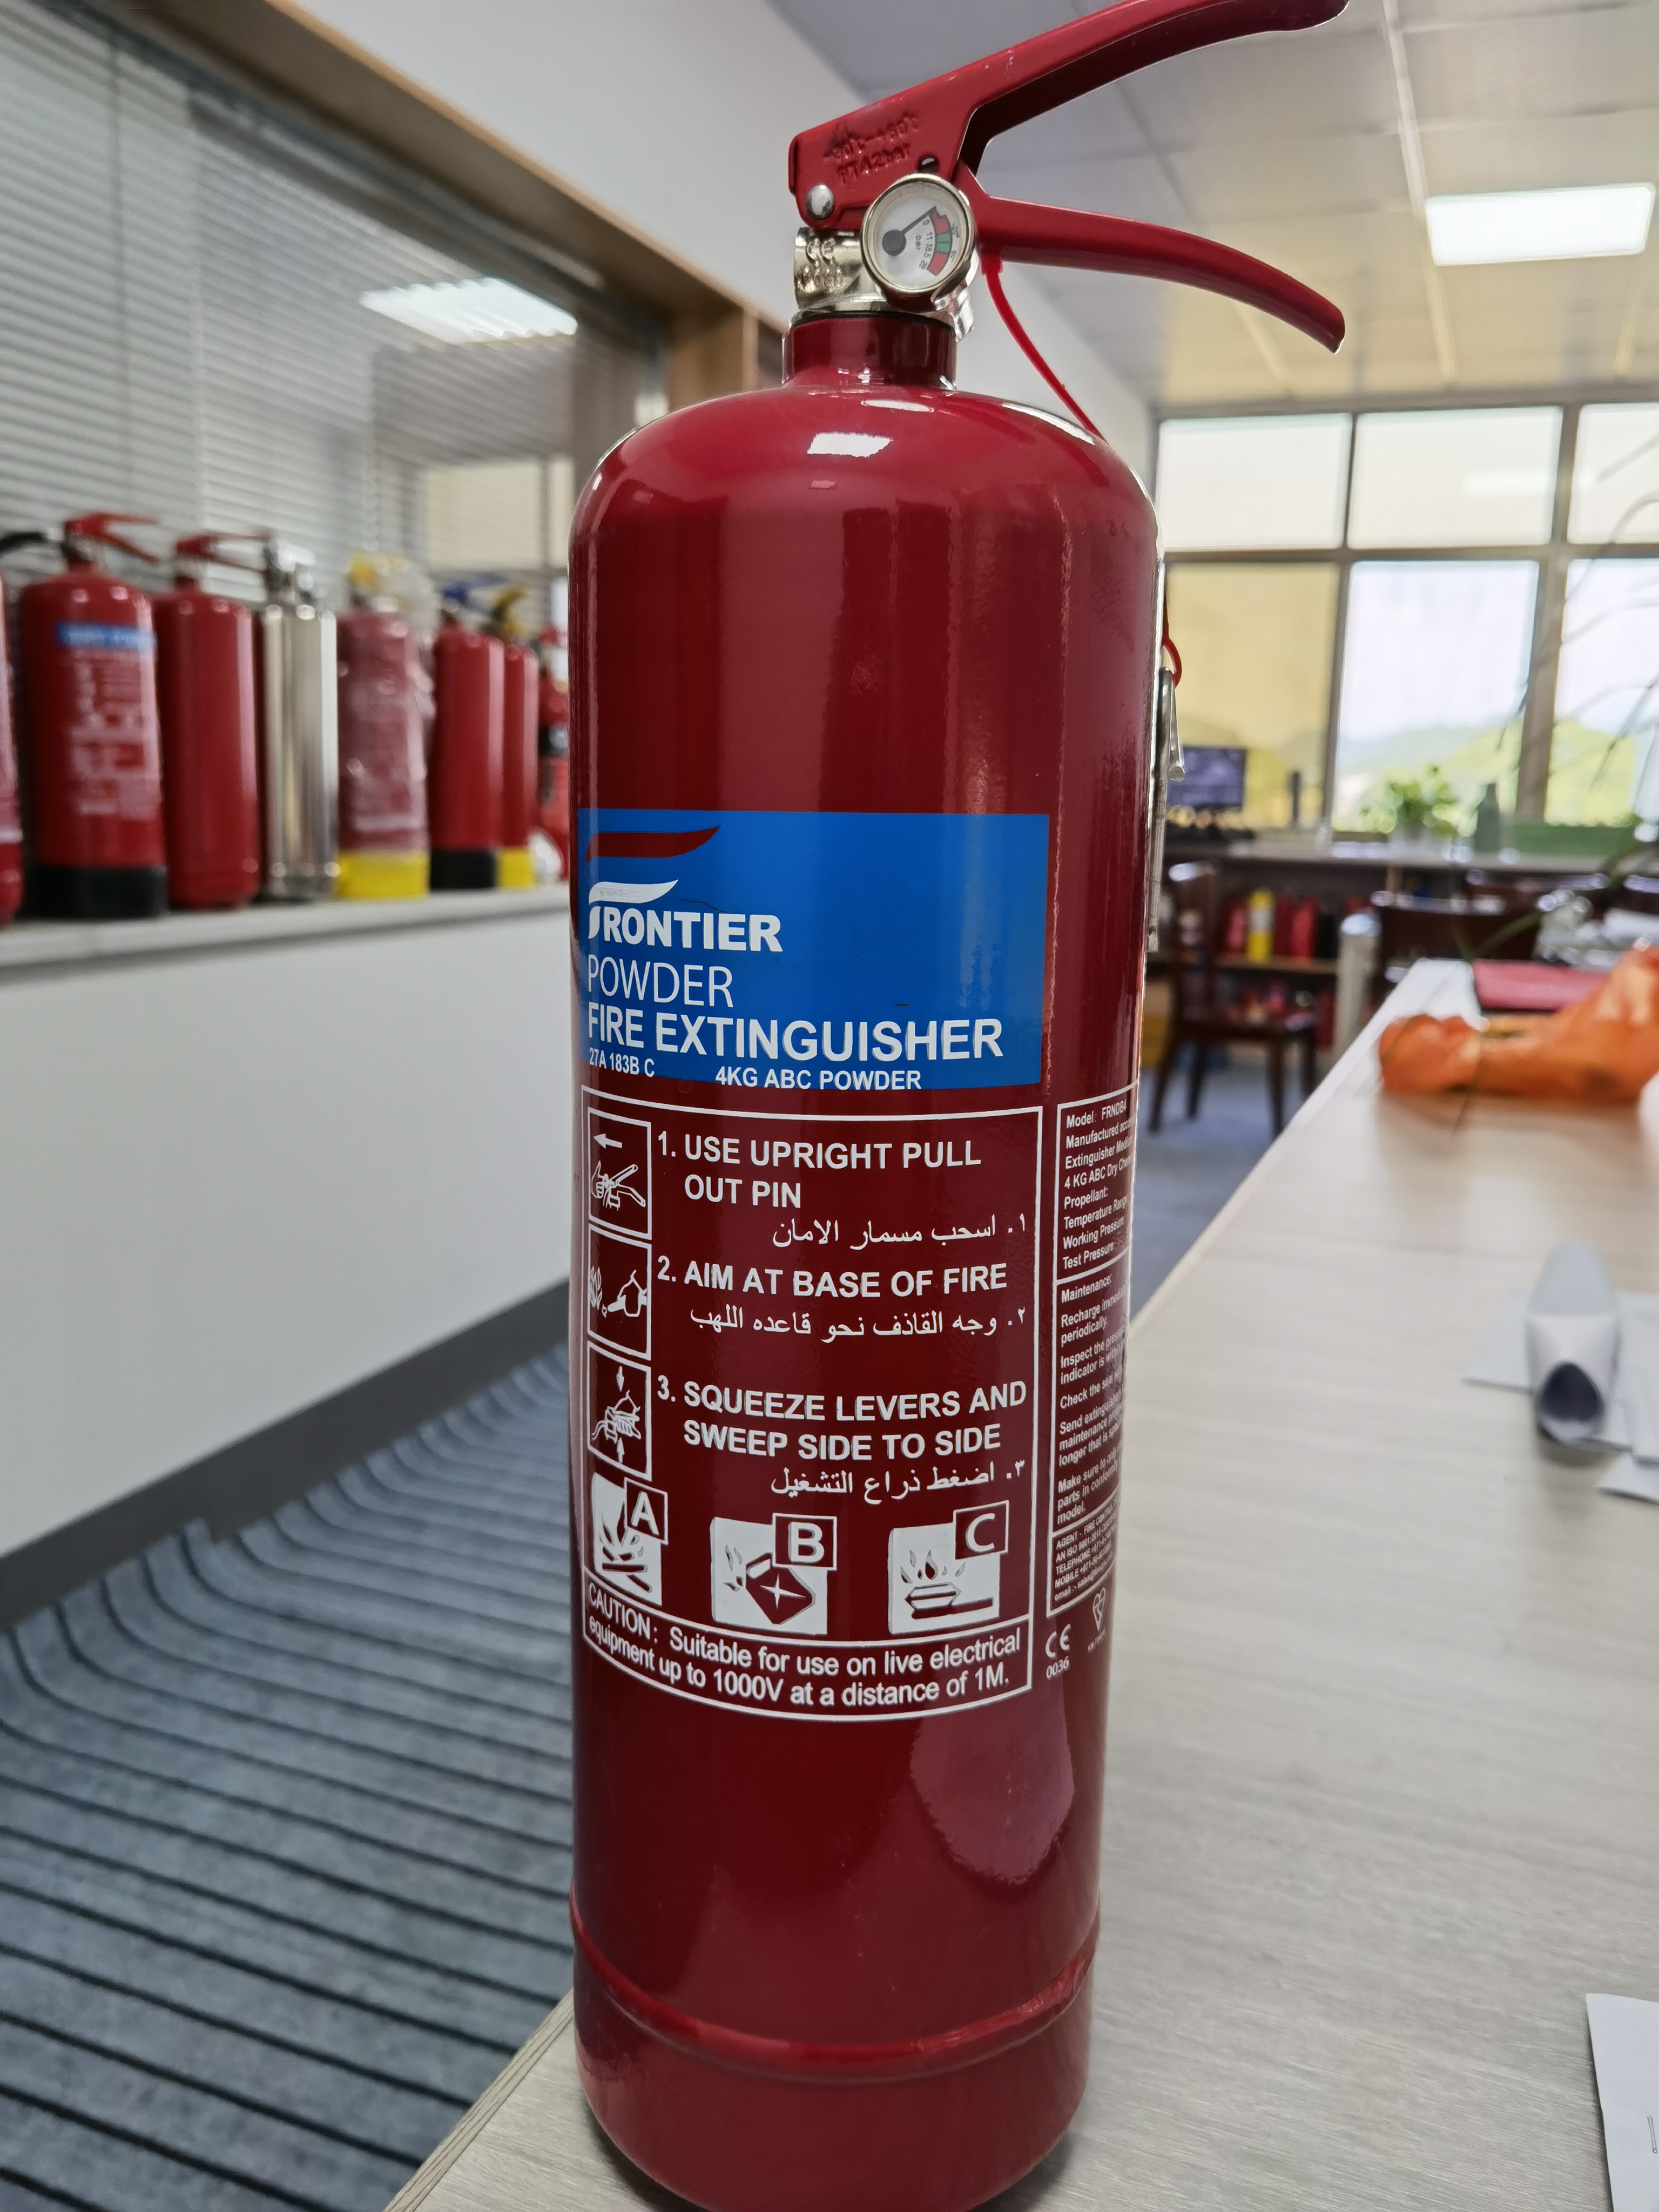 Como escolher o extintor de incêndio certo?